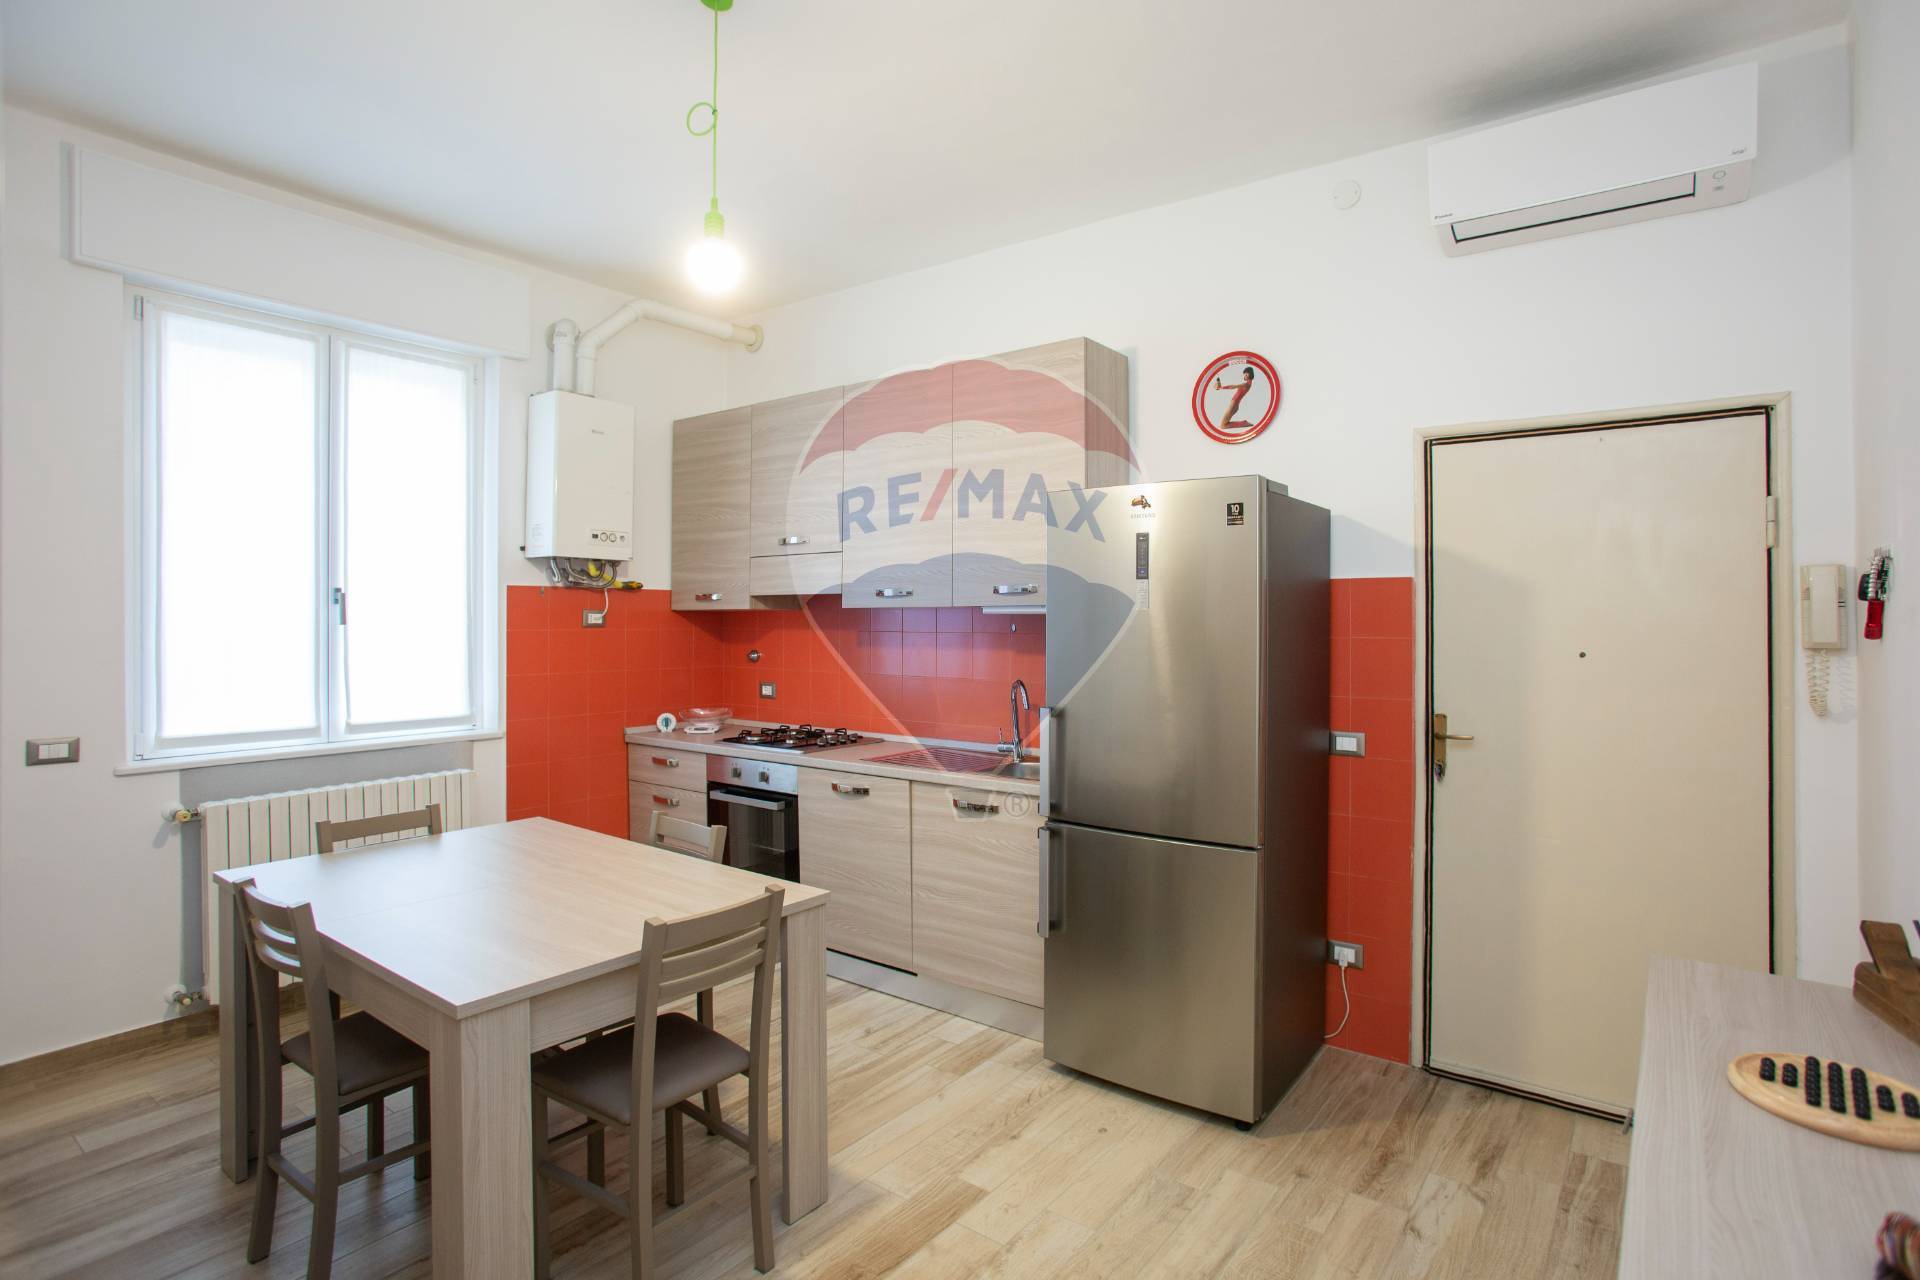 Appartamento in vendita a Spino d'Adda, 3 locali, prezzo € 75.000 | CambioCasa.it